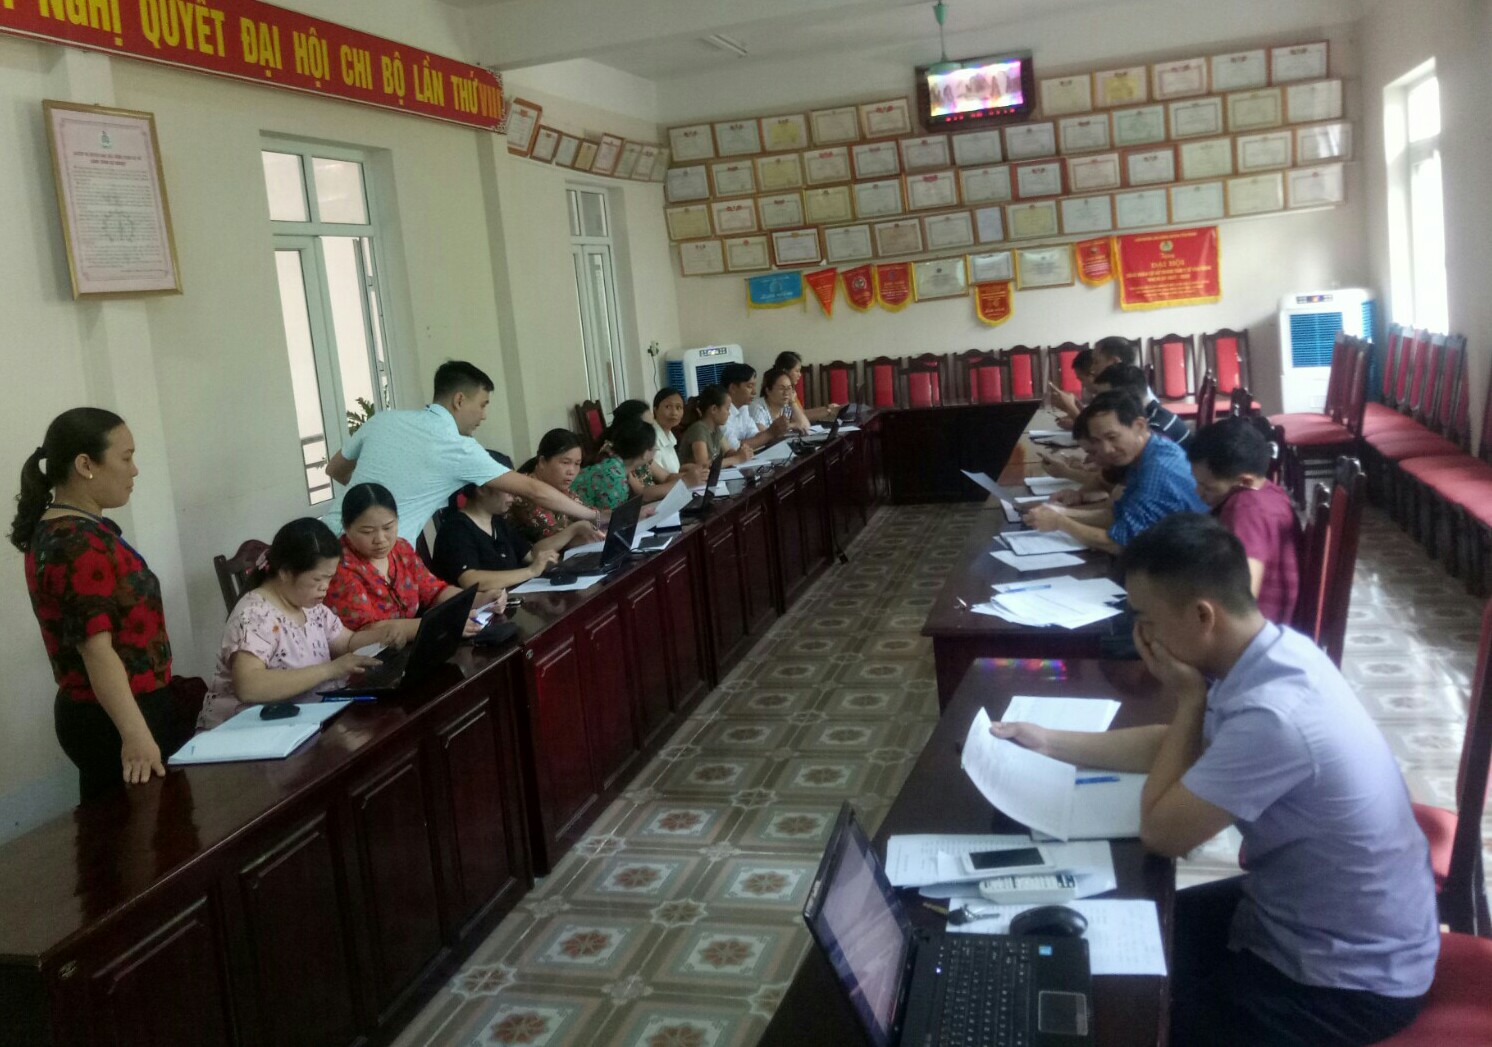 Trung tâm Y tế huyện Yên Minh tổ chức tập huấn “Hướng dẫn sử dụng phần mềm quản lý vệ sinh môi trường” cho cán bộ y tế xã